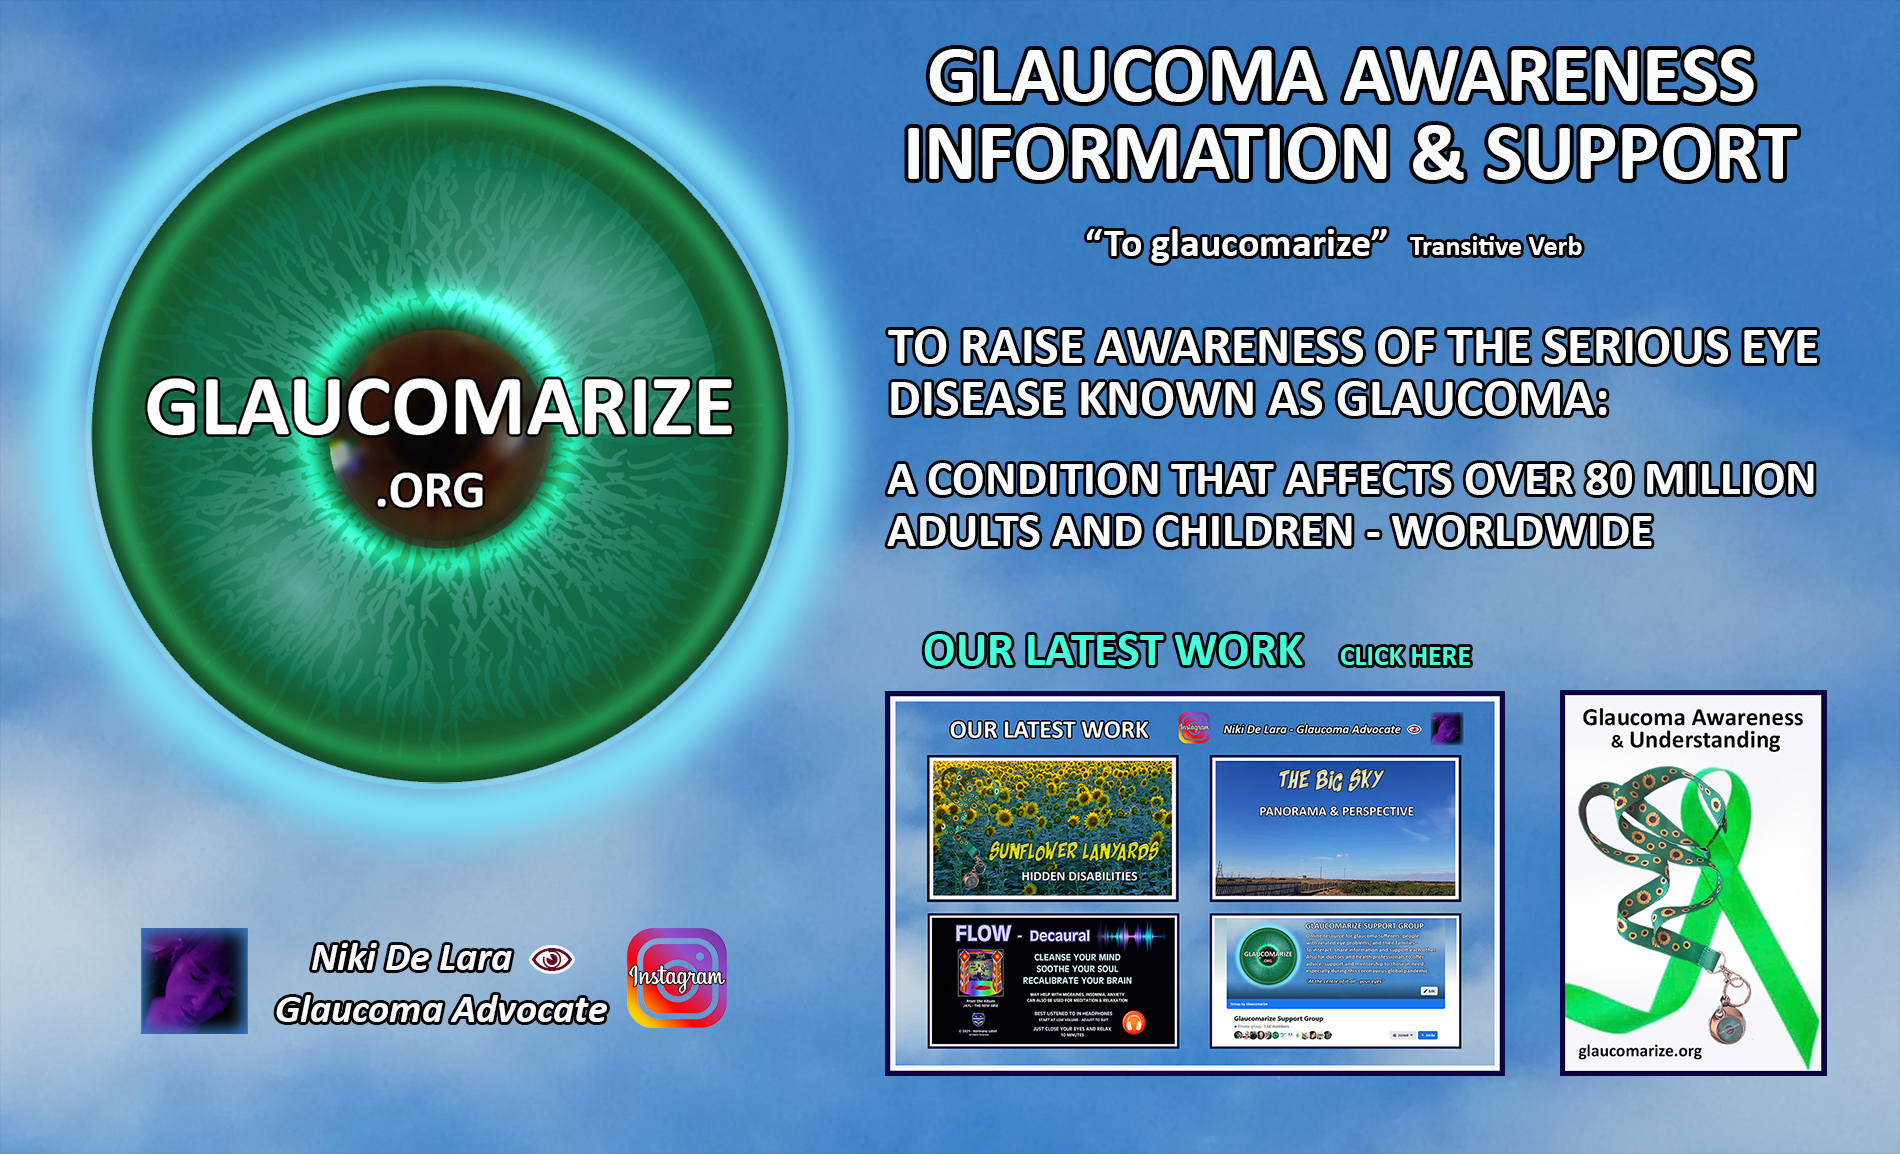 Glaucomarize.org